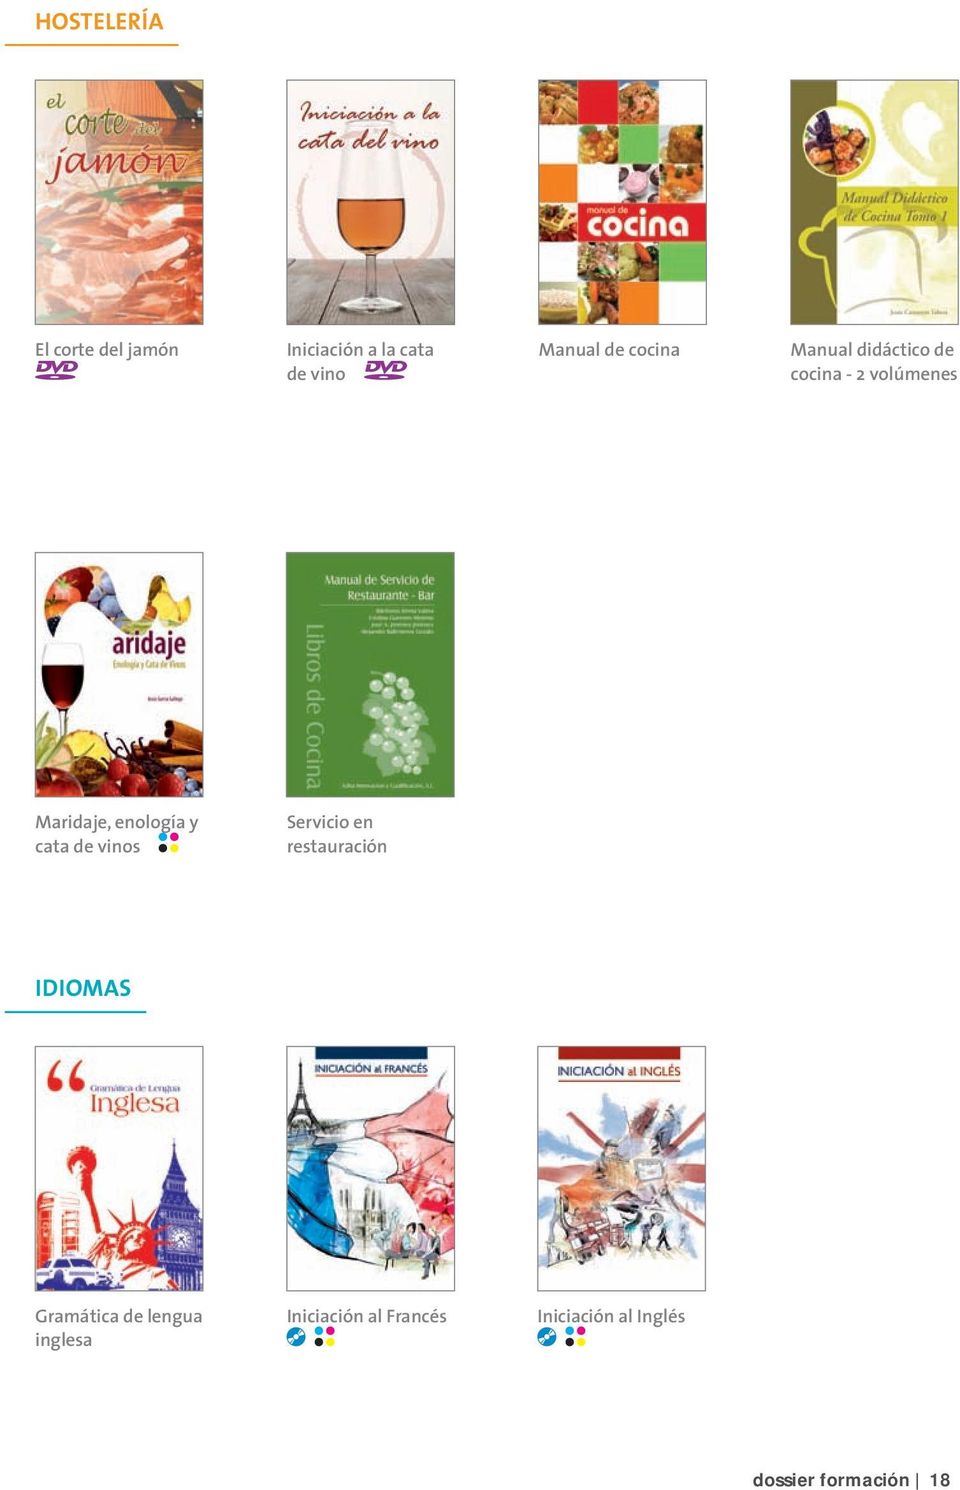 Manual didáctico de cocina - 2 volúmenes IDIOMAS Gramática de lengua